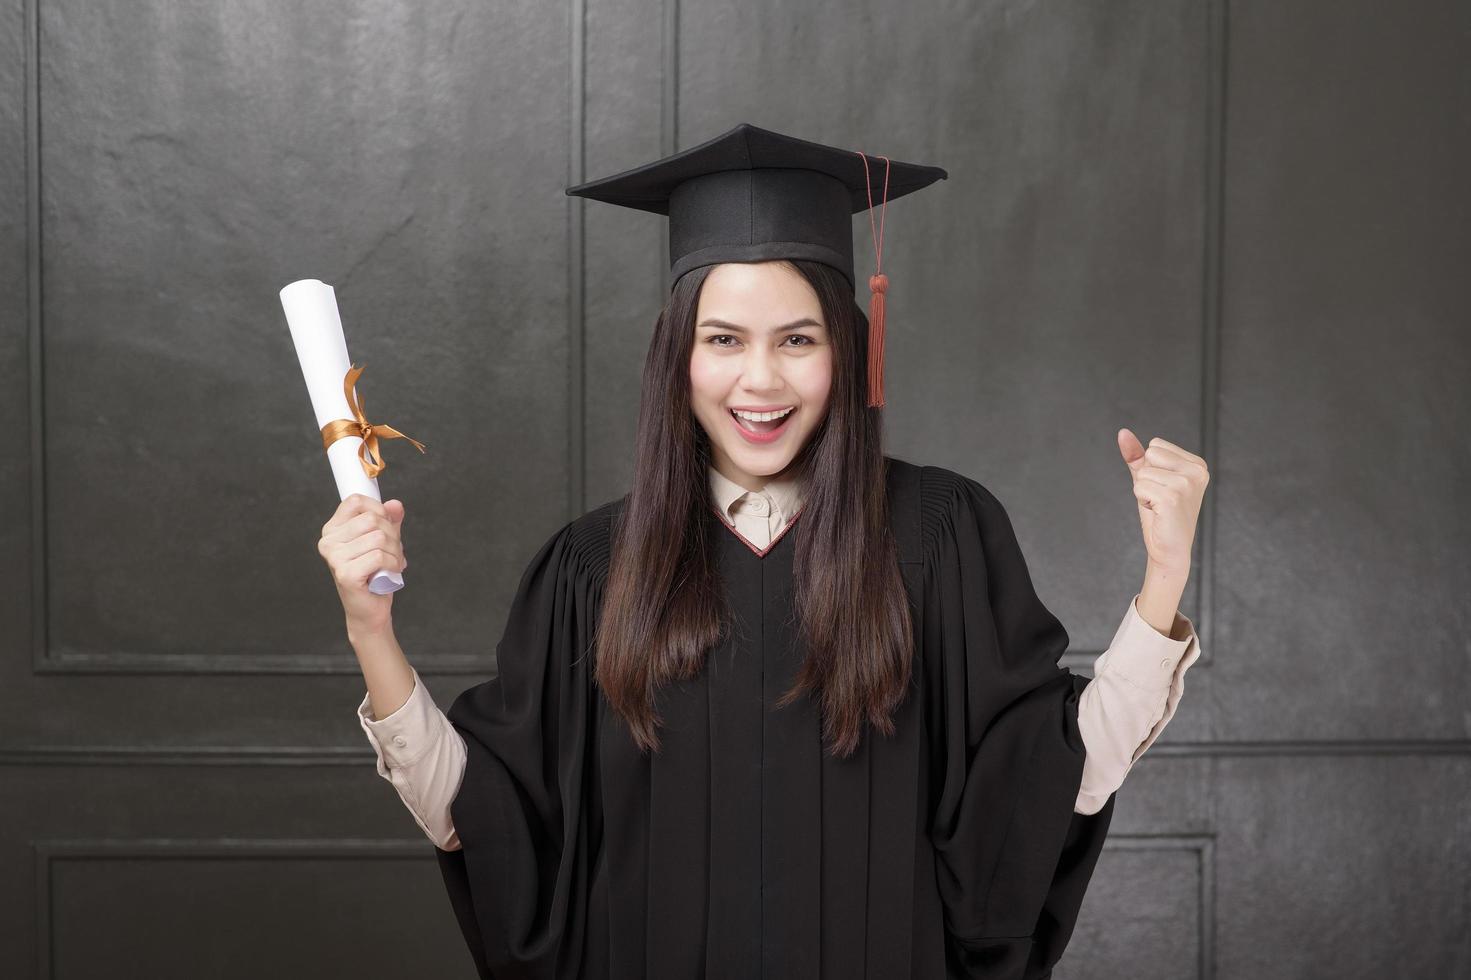 ritratto di giovane donna in abito di laurea sorridente e tifo su sfondo nero foto